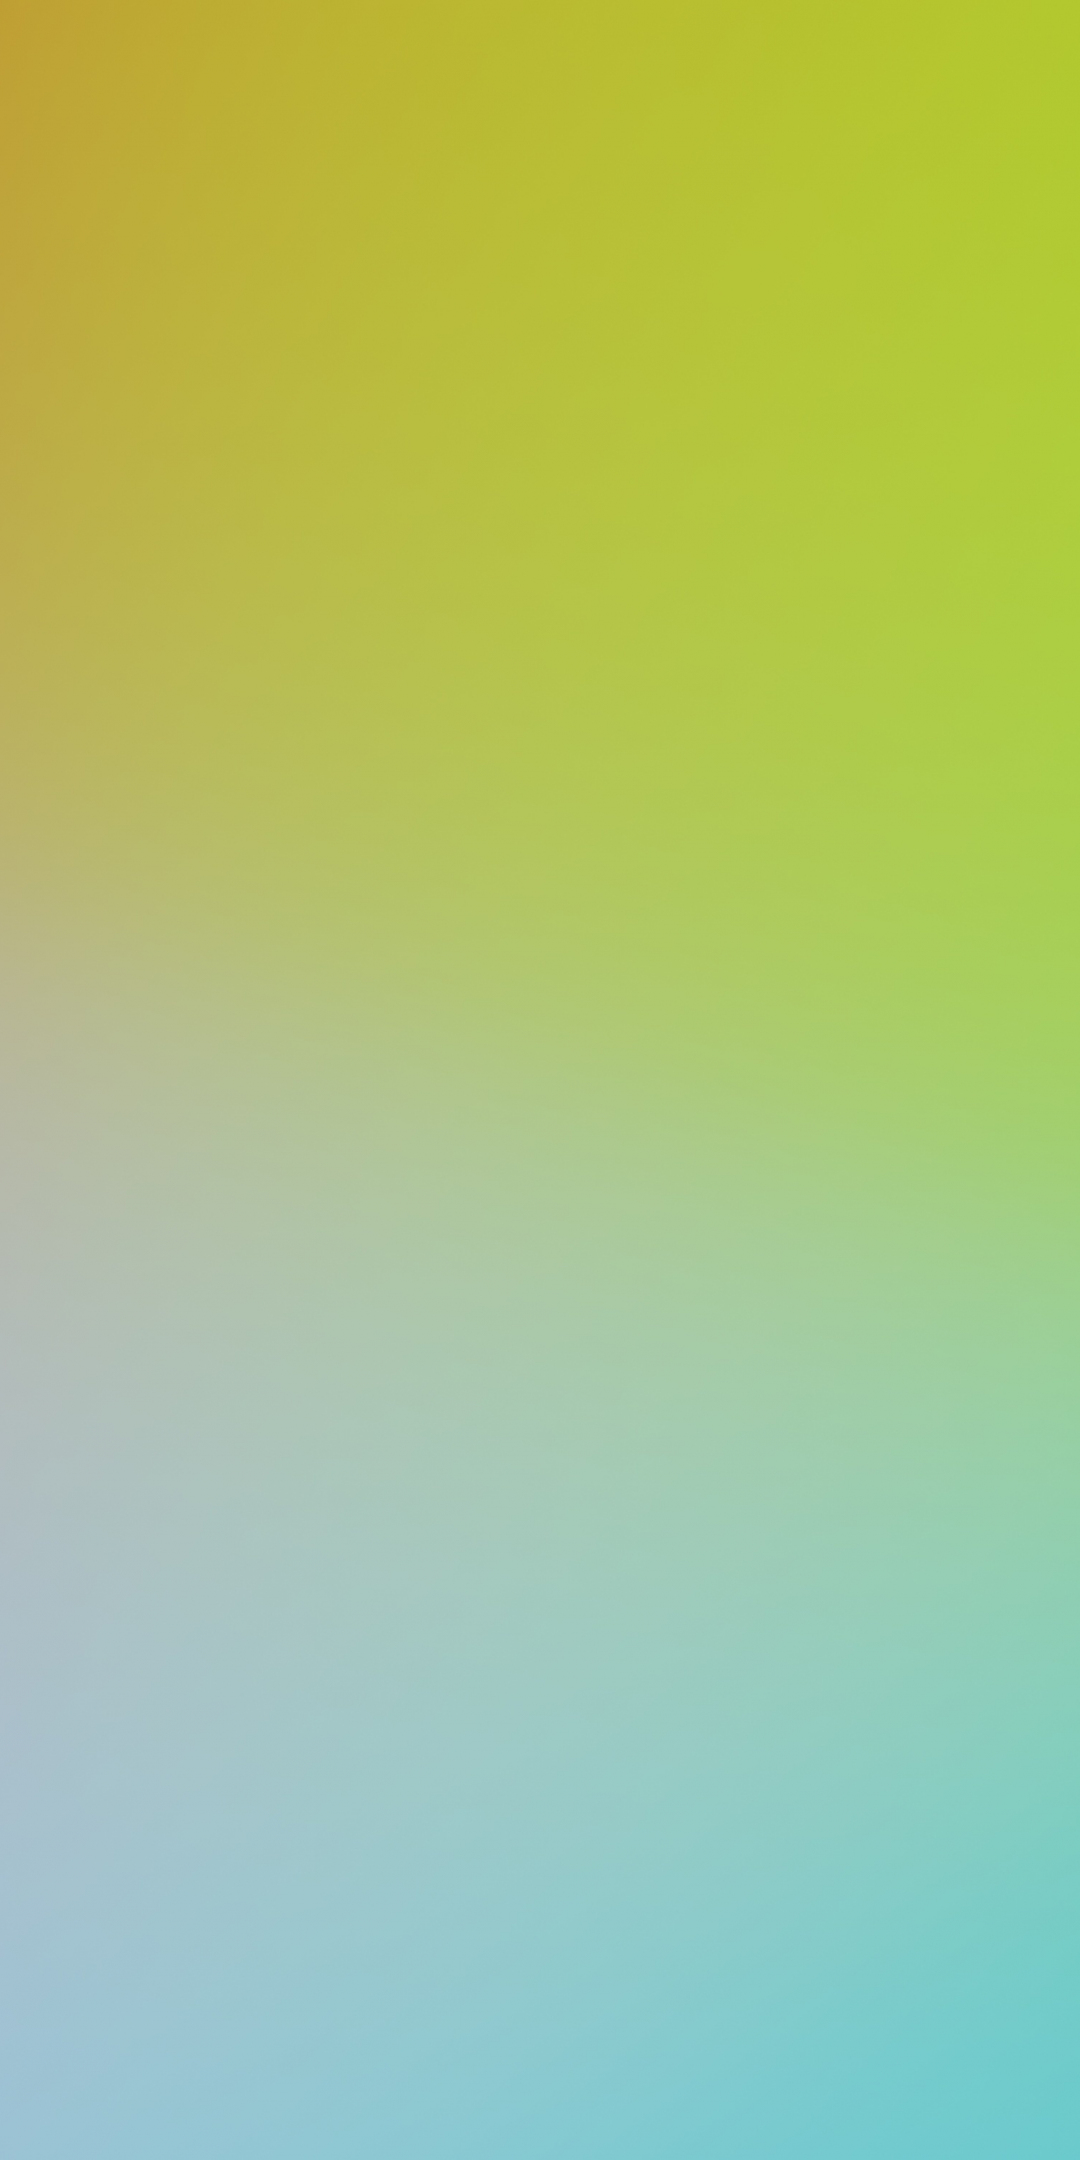 Blur, digital art, gradient, vibrant colors, 1080x2160 wallpaper